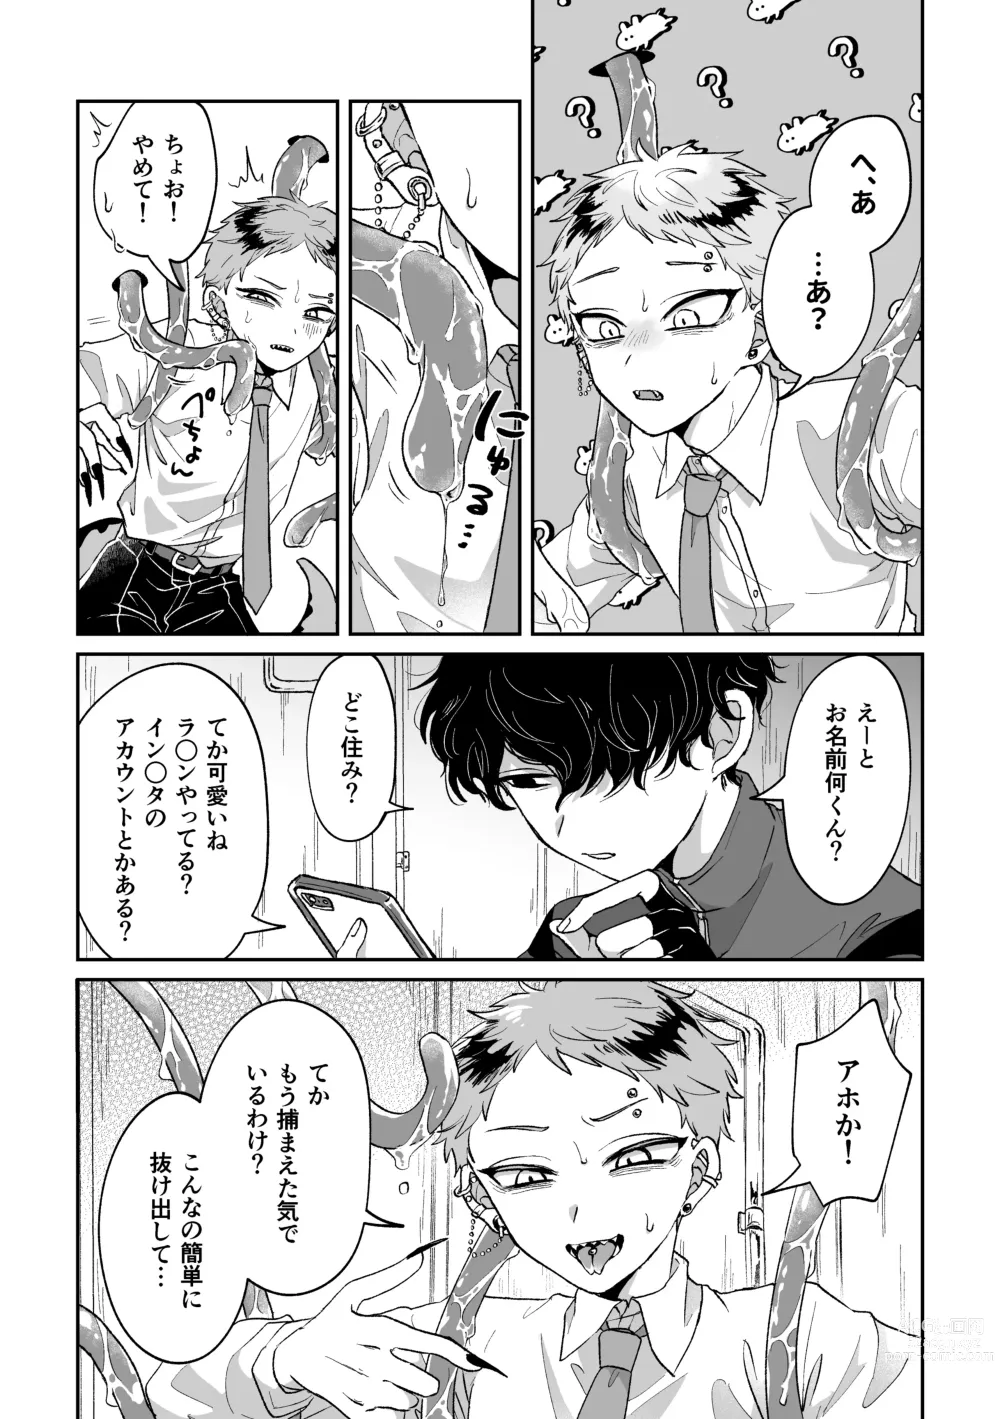 Page 4 of doujinshi Warui kedo Kore Ero Manga nanda yo ne